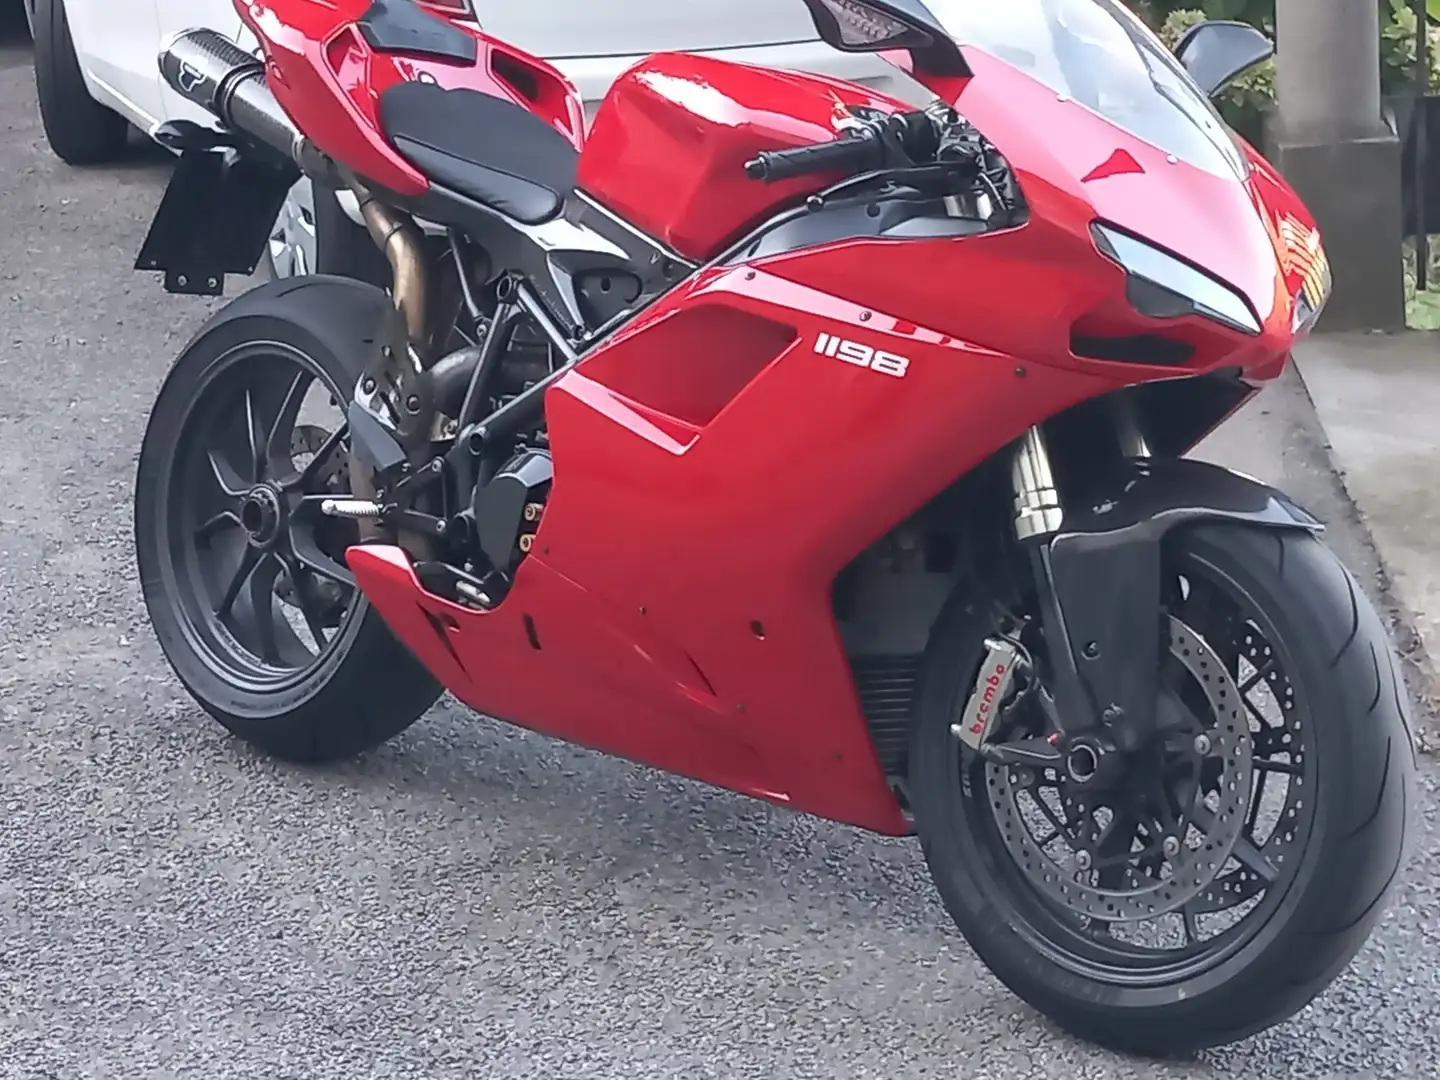 Ducati 1198 Rosso - 1